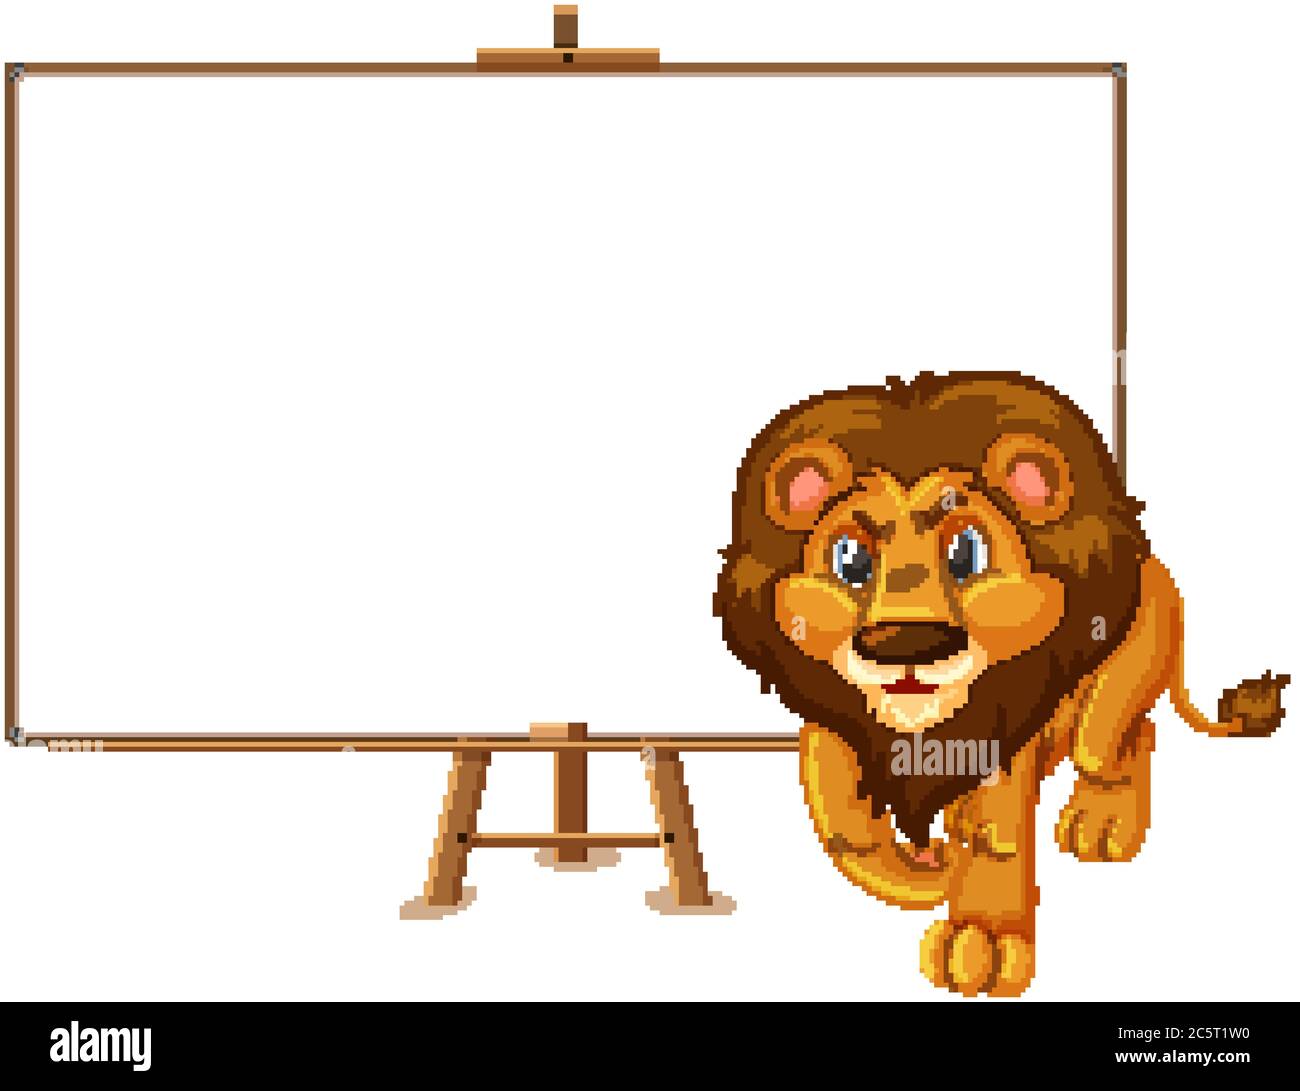 Personnage de dessin animé Lion et bannière vierge sur fond blanc Illustration de Vecteur